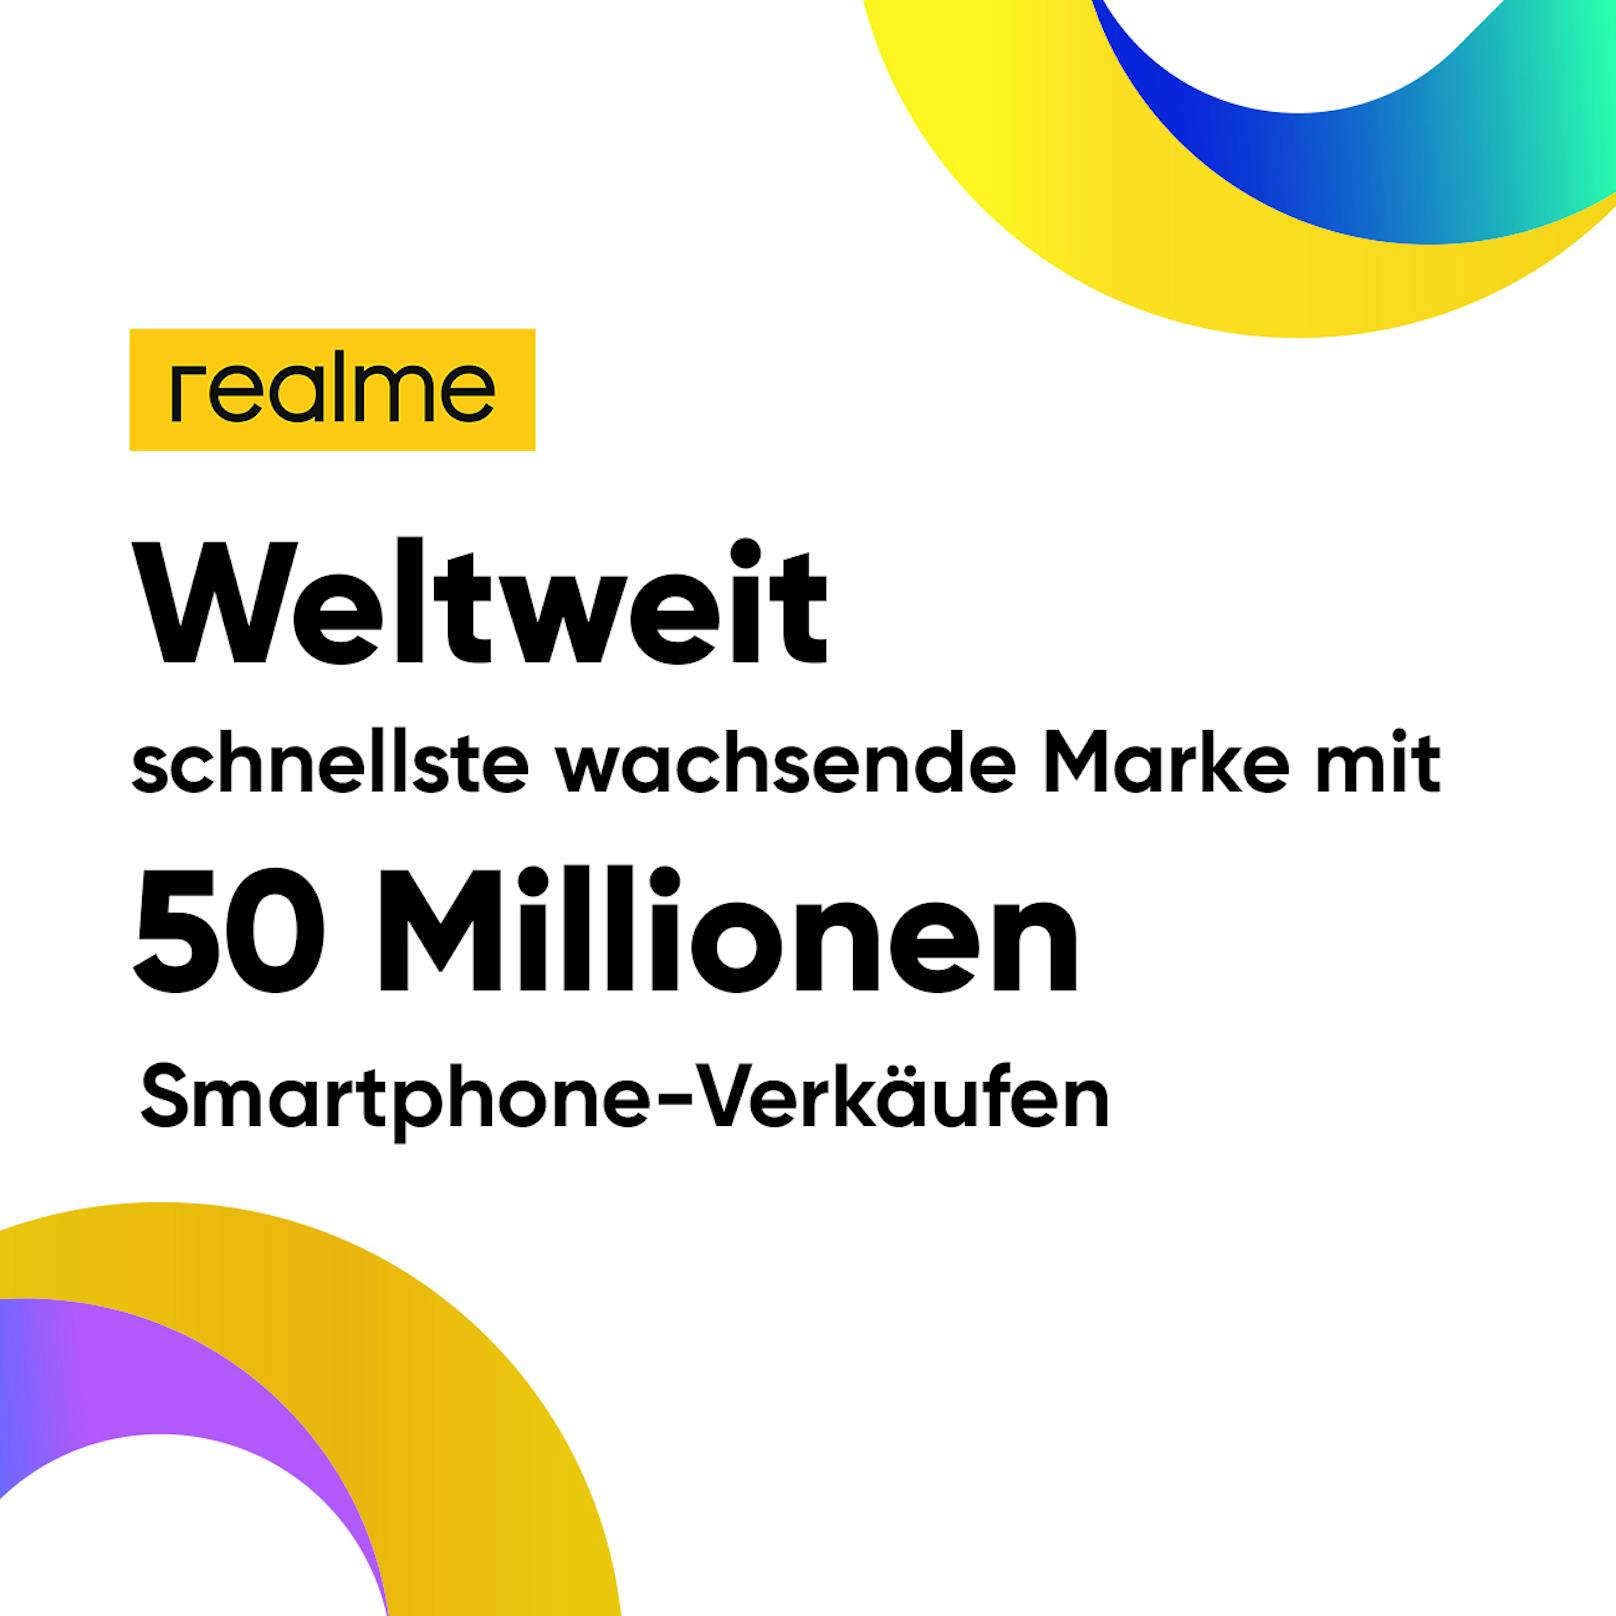 realme ist die am schnellsten wachsende Smartphone-Marke weltweit laut Counterpoint Research.